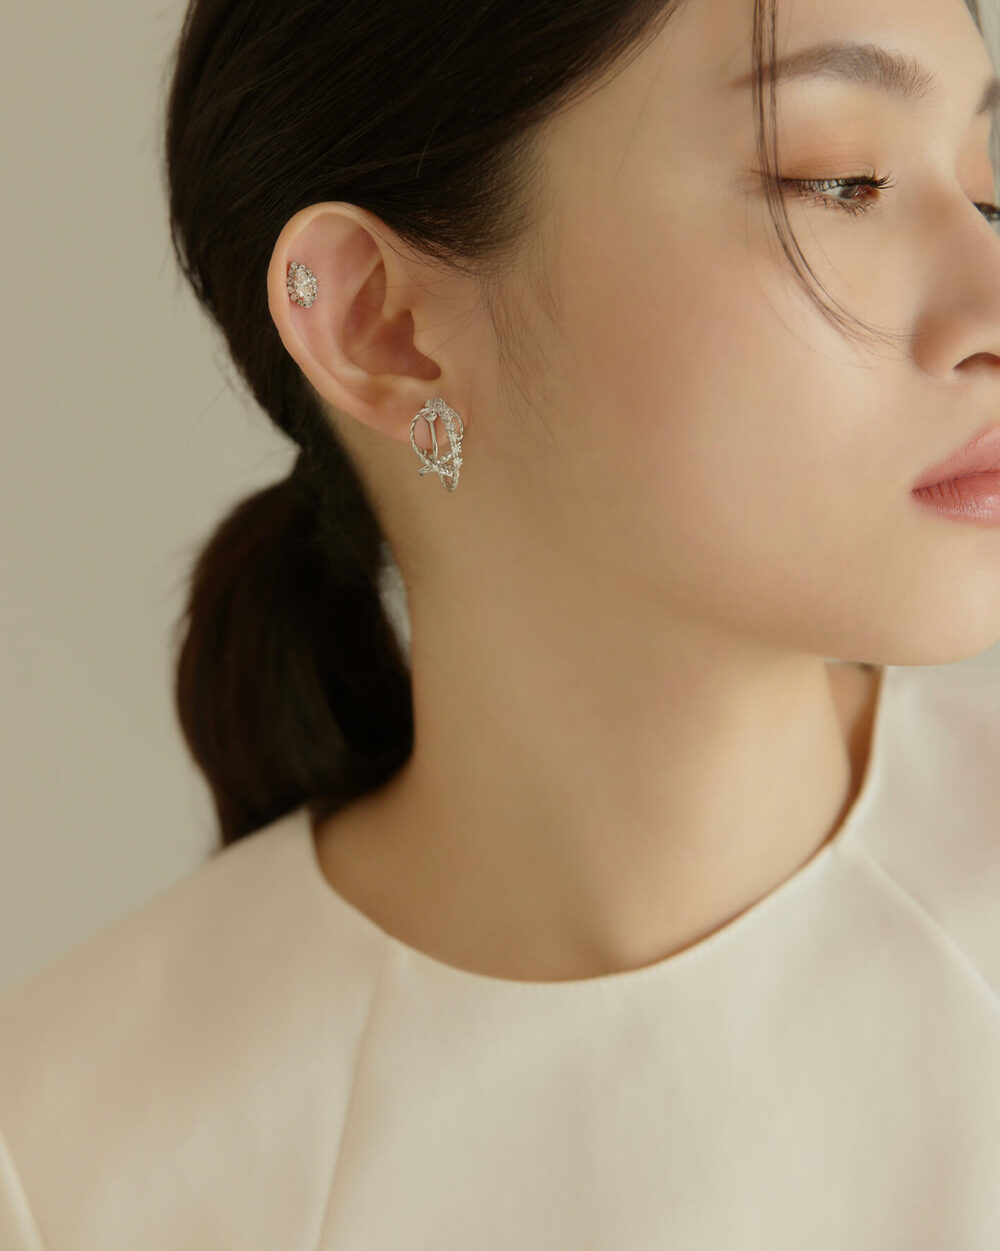 Eco安珂,韓國飾品,韓國耳環,韓國耳骨夾,韓國耳扣,耳夾式耳環,磁鐵水滴耳環,磁吸式耳環,無耳洞耳環